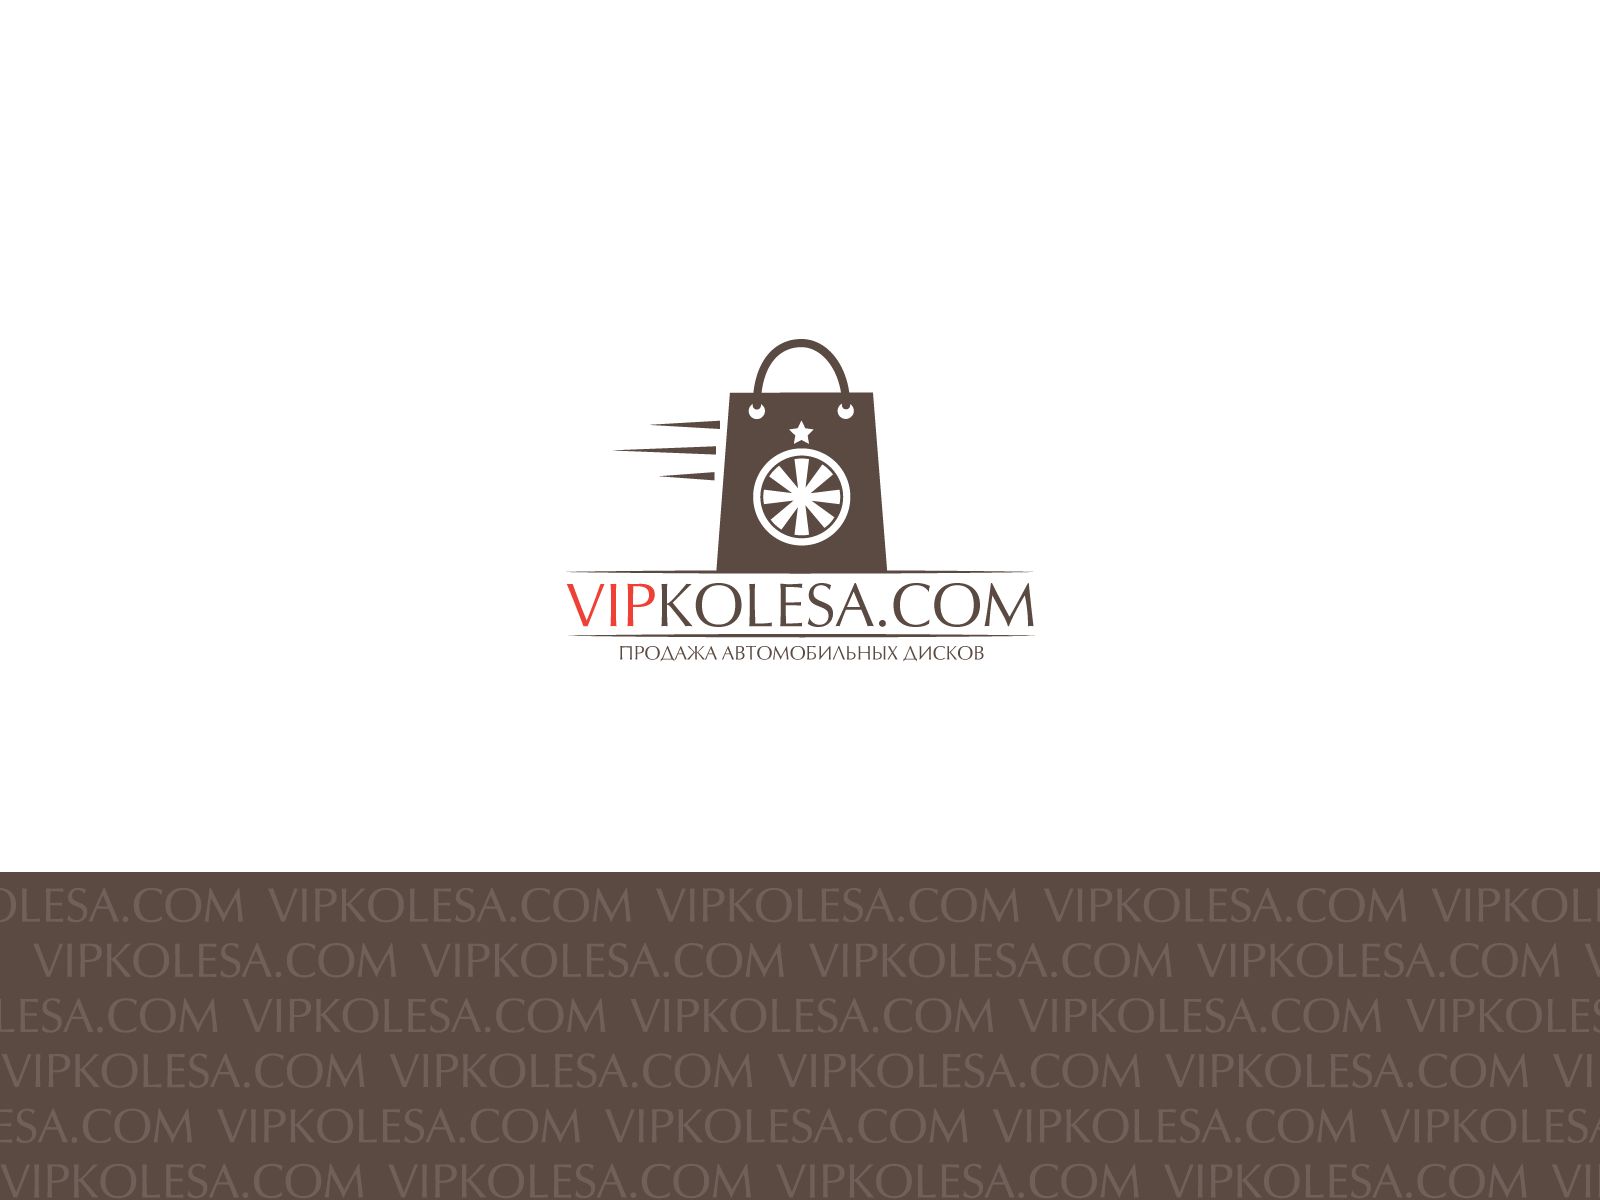 Логотип для vipkolesa.com - дизайнер Bukawka